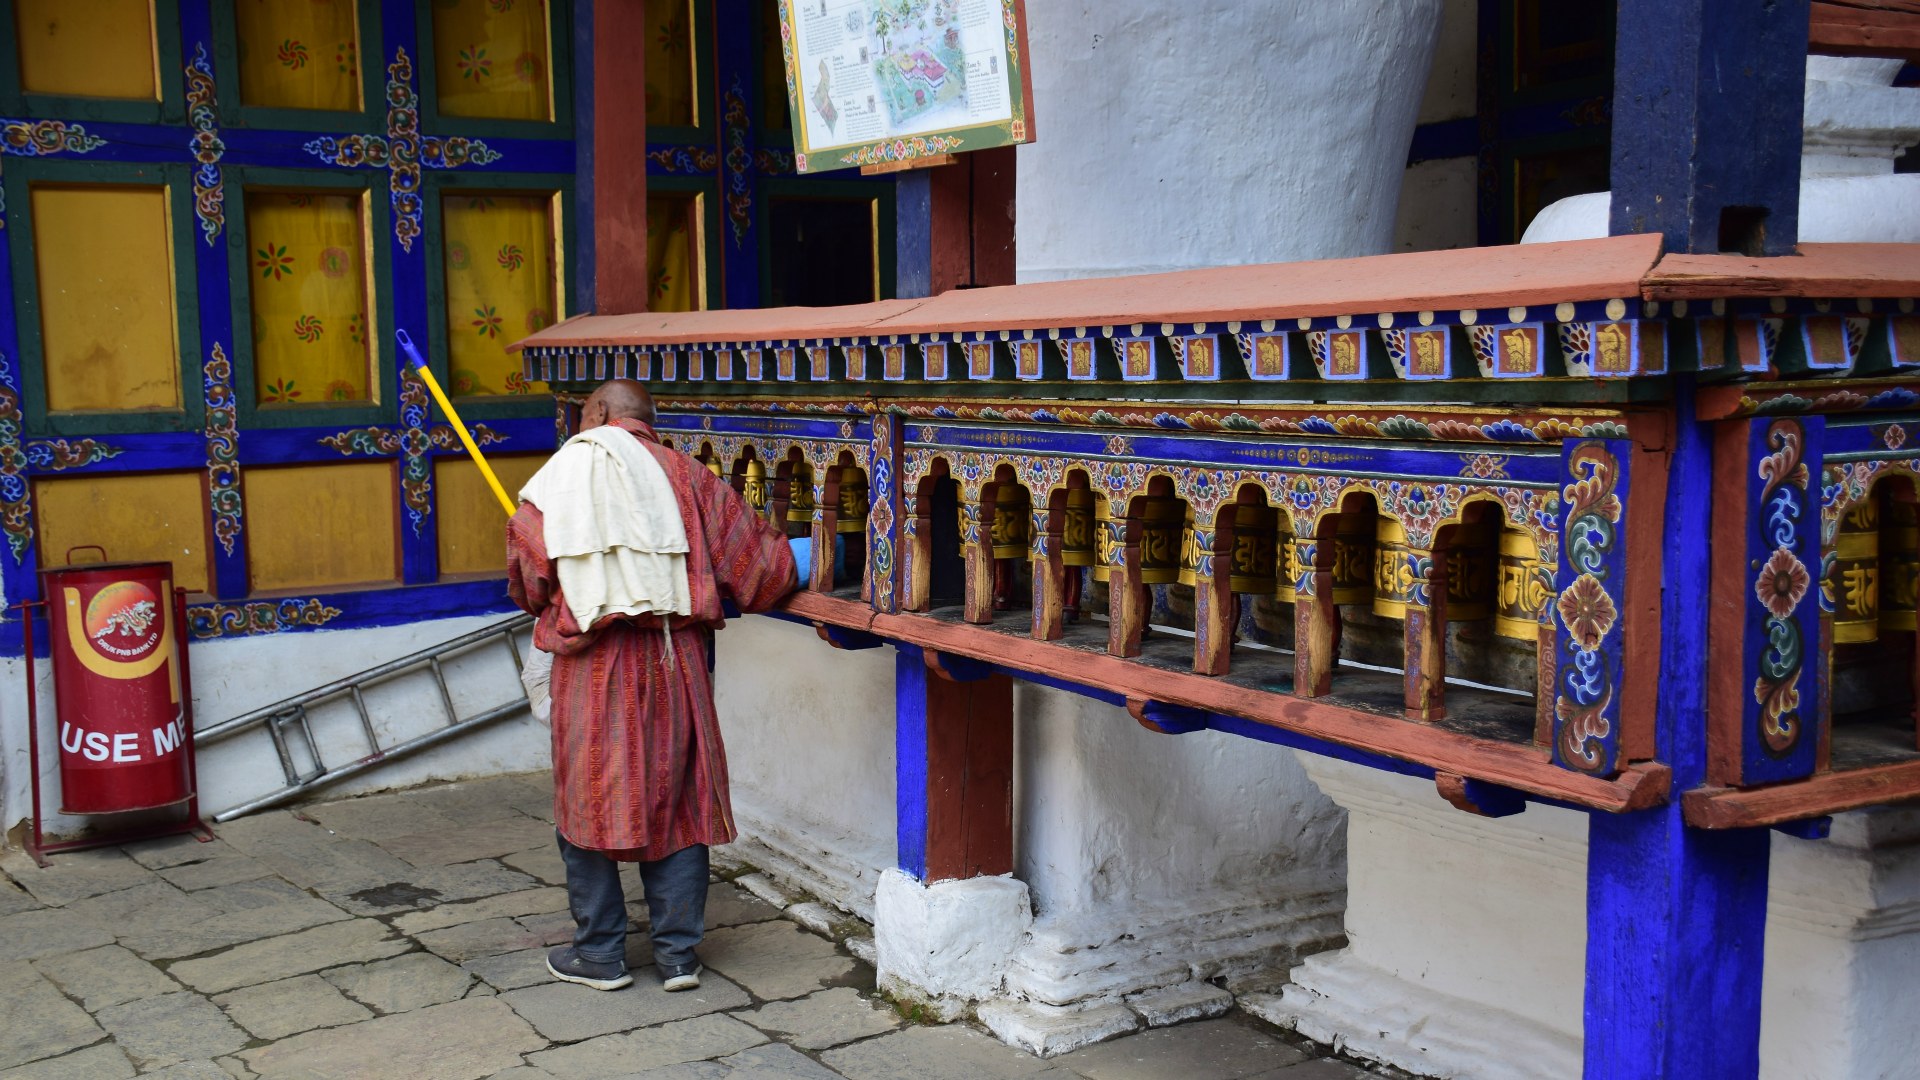 Prayer Wheels, Kyichu Lhakhang, Paro